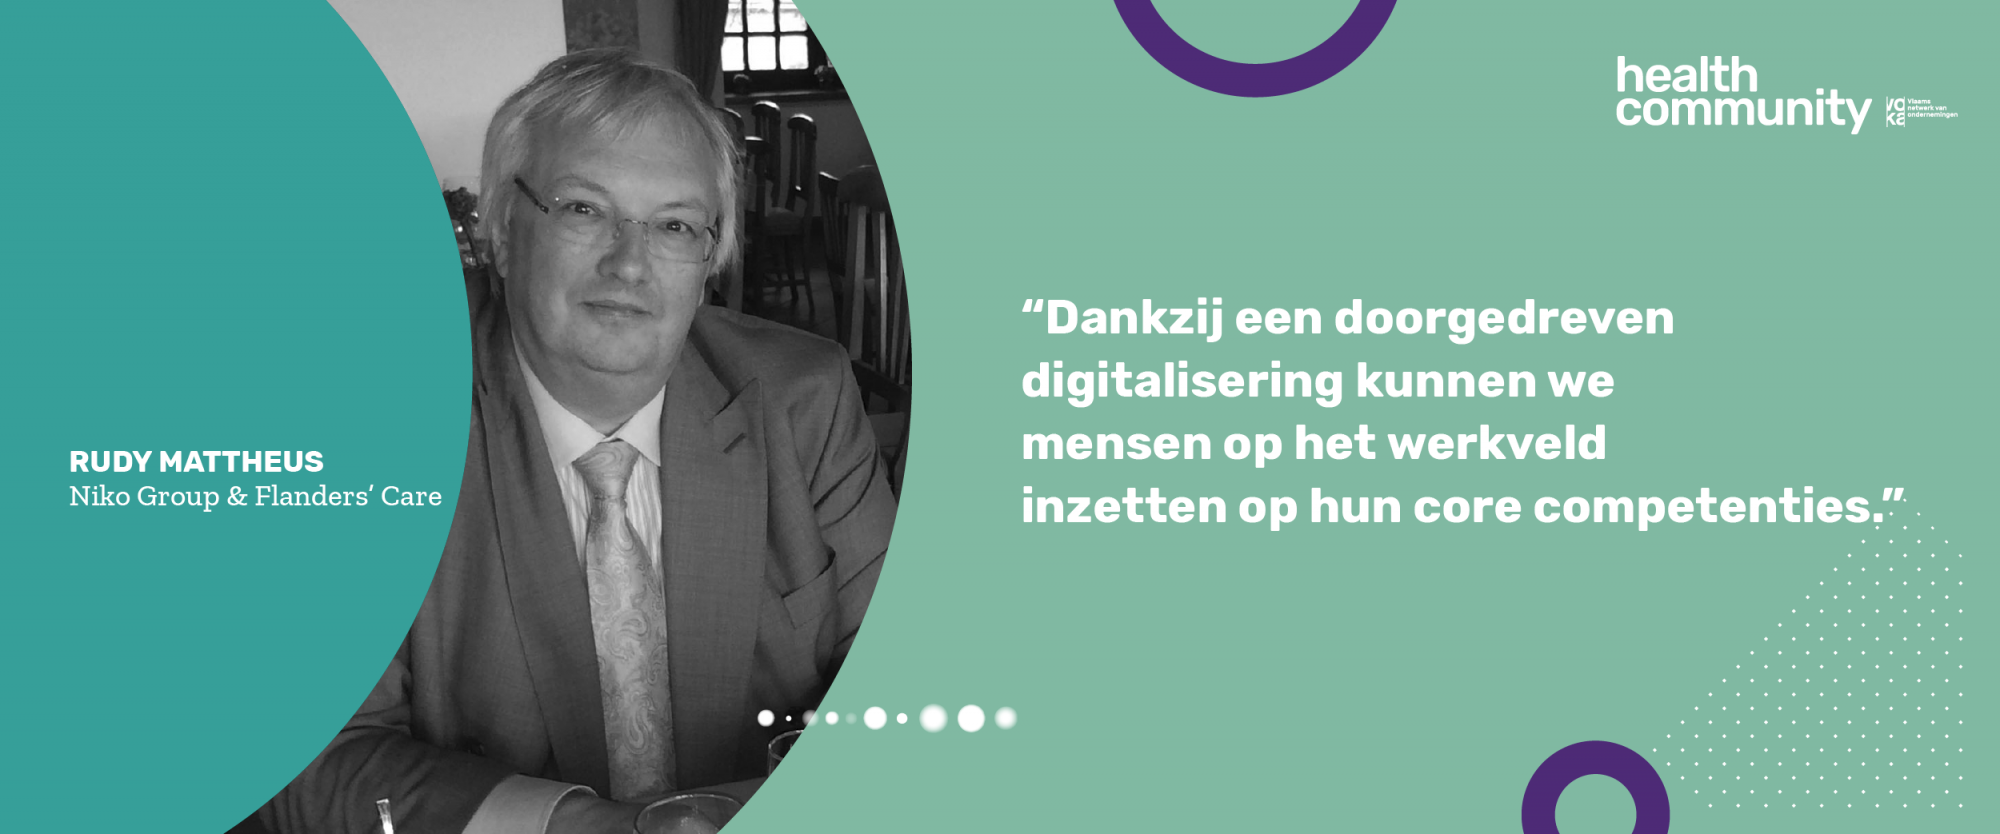 "Vlaanderen als innovatieve regio voor digitalisering in zorg en welzijn"